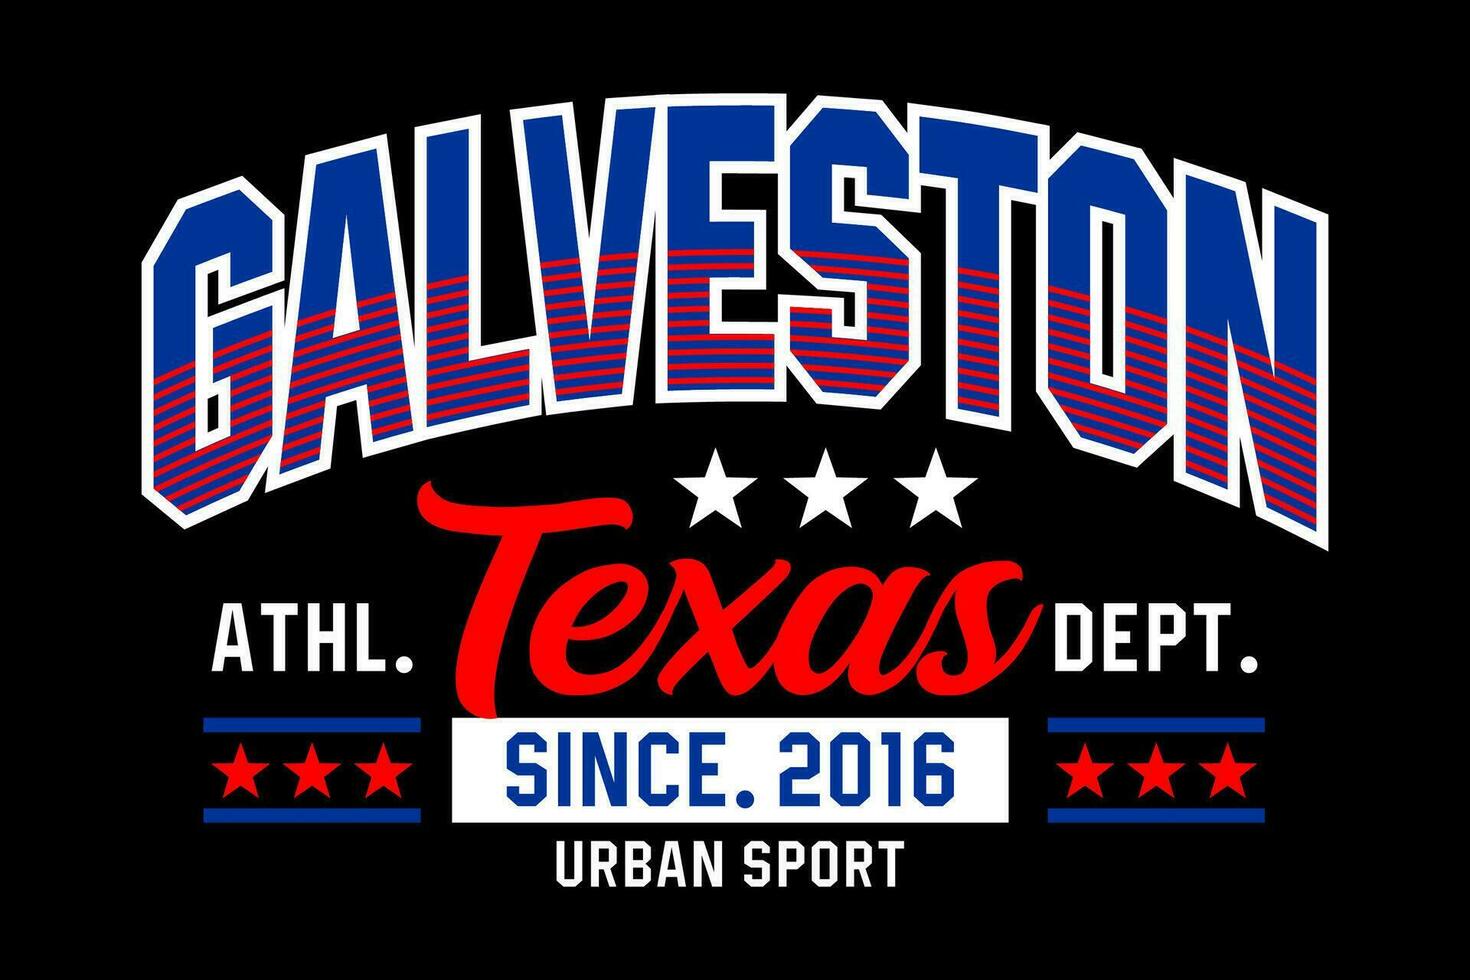 Galveston texas vintage faculdade, para impressão em t camisas etc. vetor